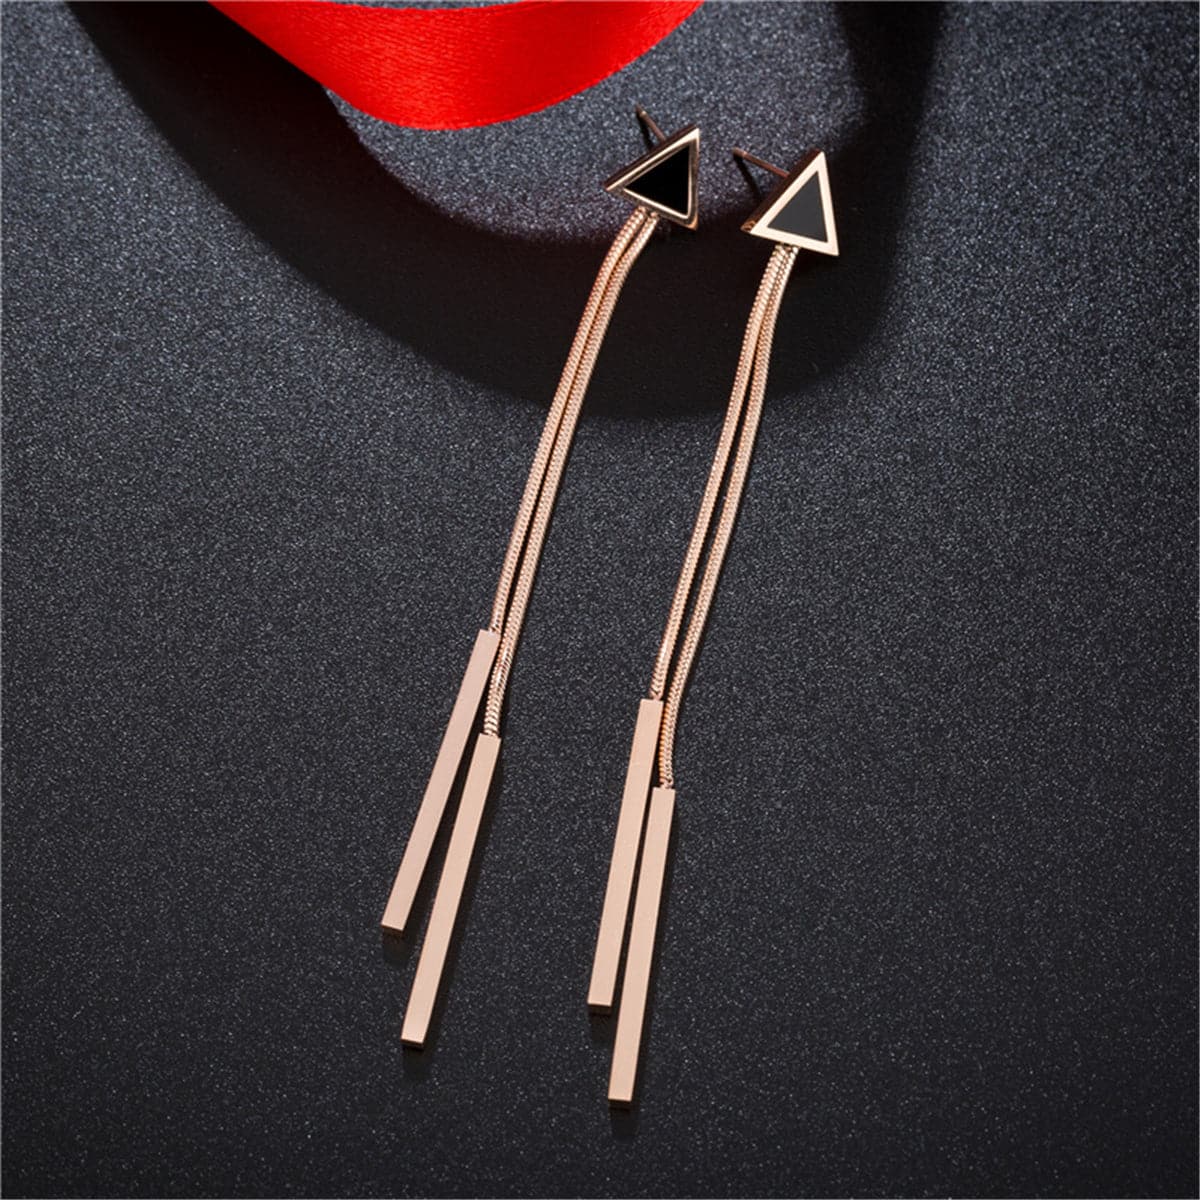 18K Rose Gold-Plated & Black Triangle & Tassel Drop Earrings